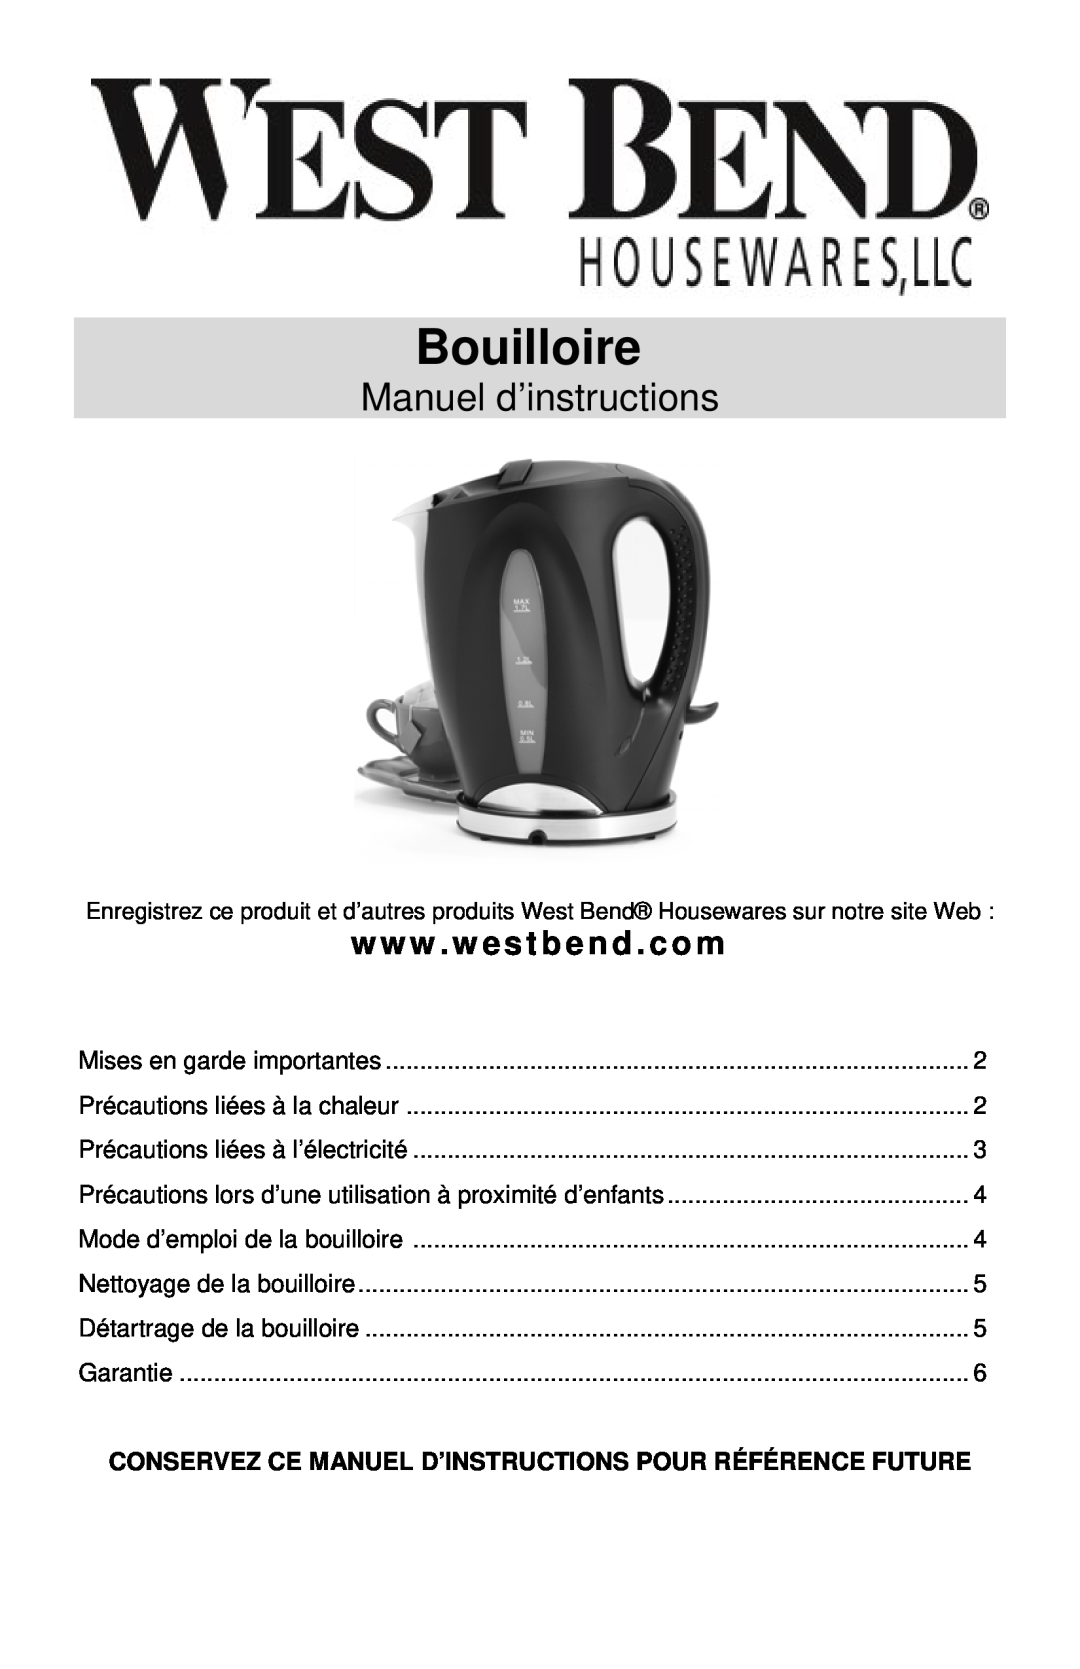 West Bend 53783 instruction manual Bouilloire, Manuel d’instructions, www . westbend . com 